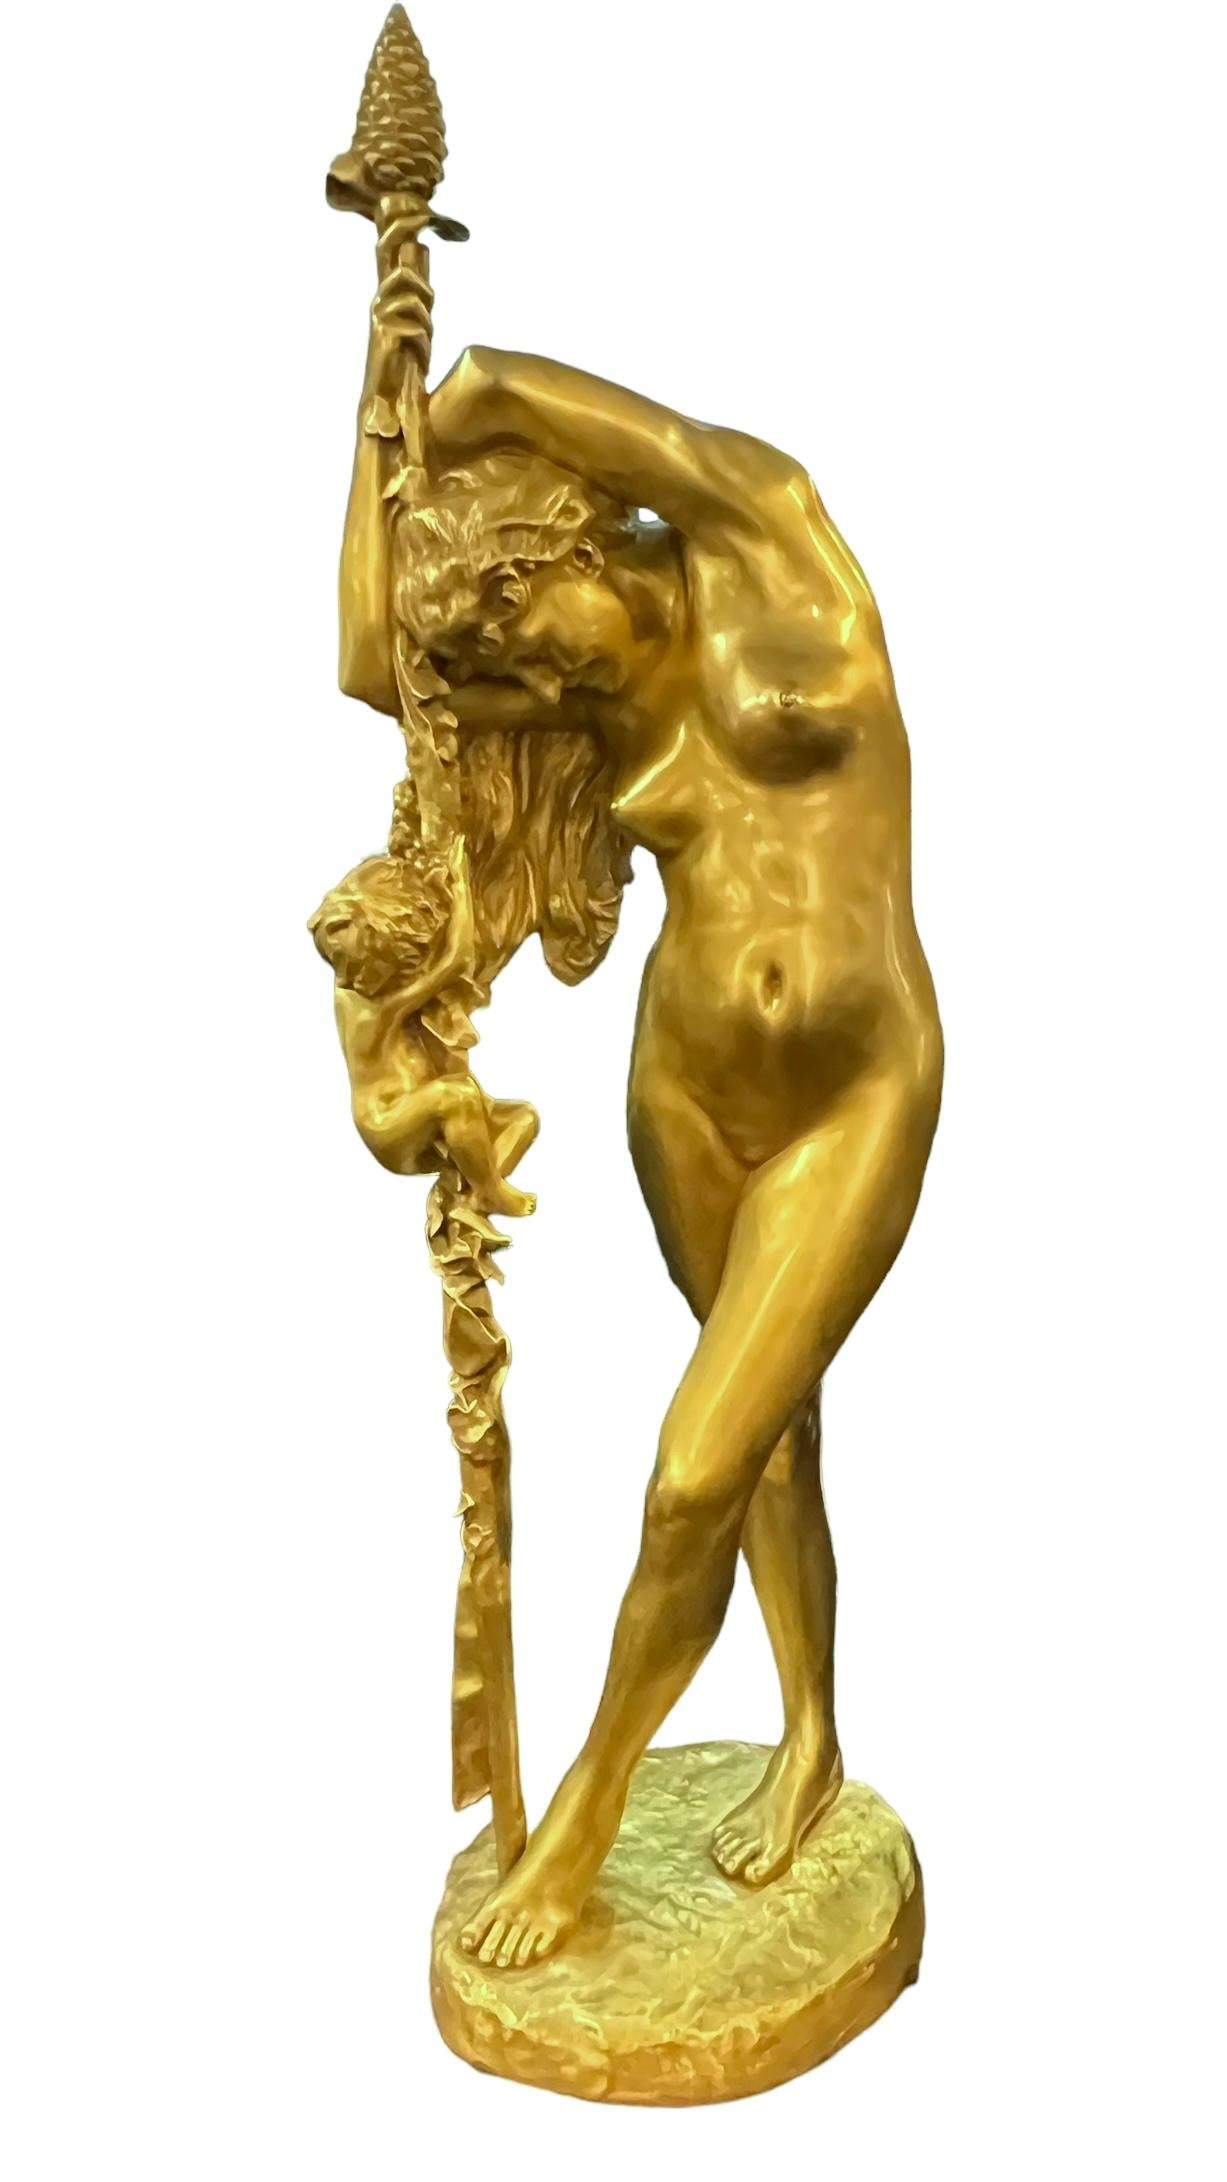 Notre très grande figure en bronze doré de Jean-Léon Gérôme (1824-1904) représente Vénus tenant et s'appuyant sur un bâton dionysiaque avec un fleuron en forme de pomme de pin, tandis que Cupidon grimpe sur le bâton.  Base marquée JL GEROME.